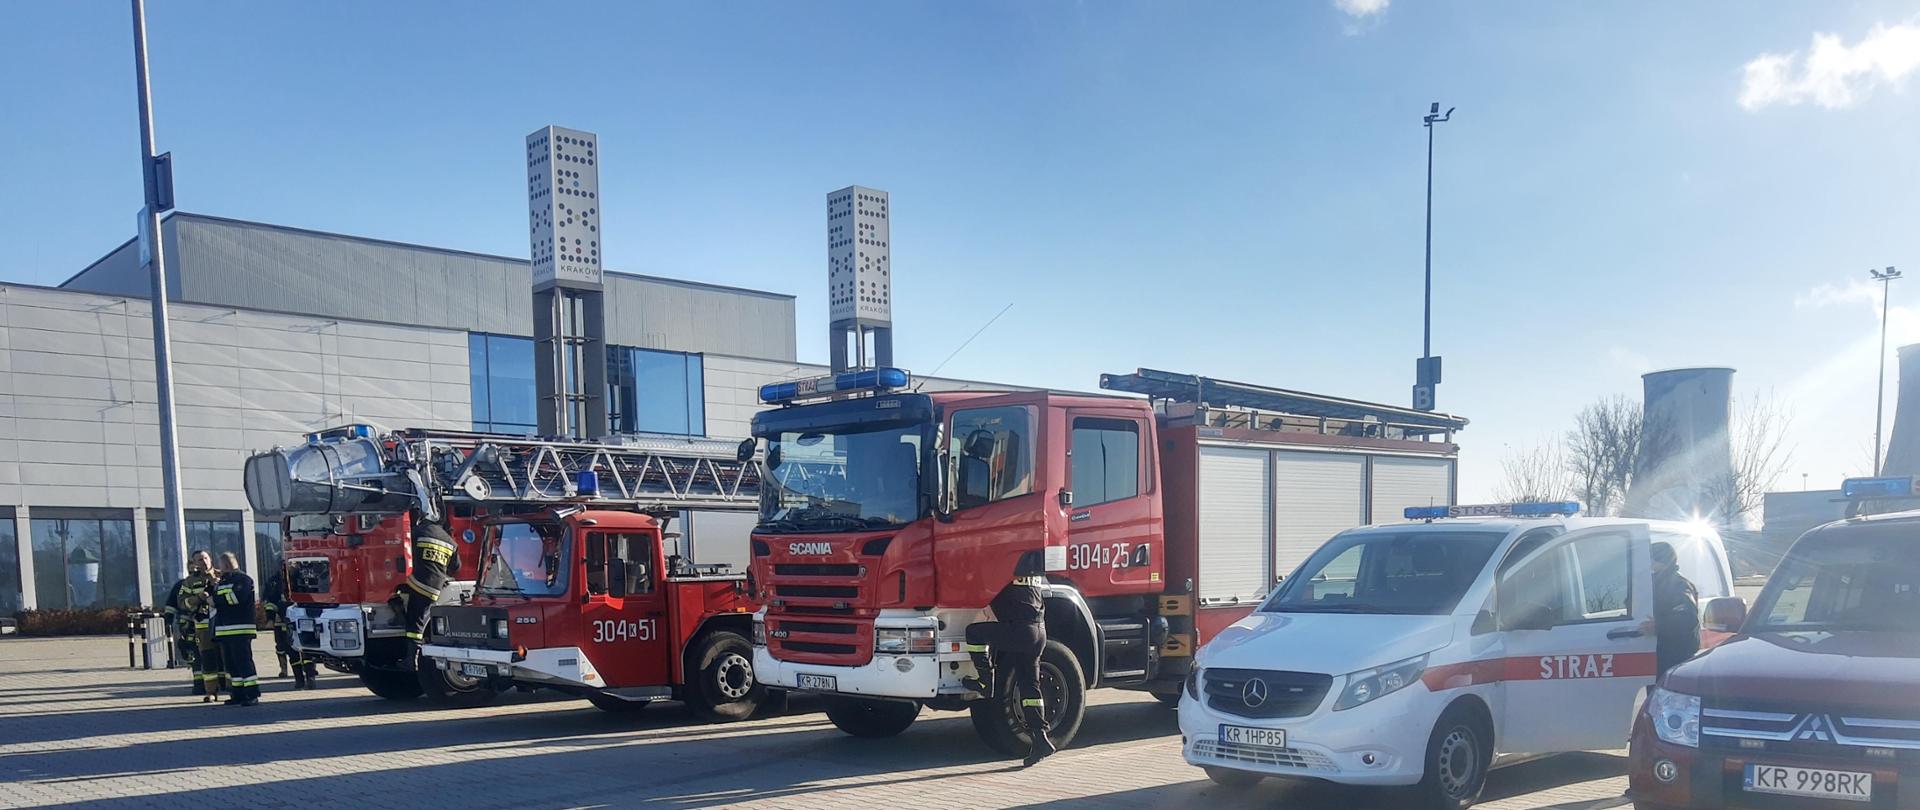 Zdjęcie przedstawia pojazdy pożarnicze na parkingu z kostki brukowej przed halą expo Kraków.